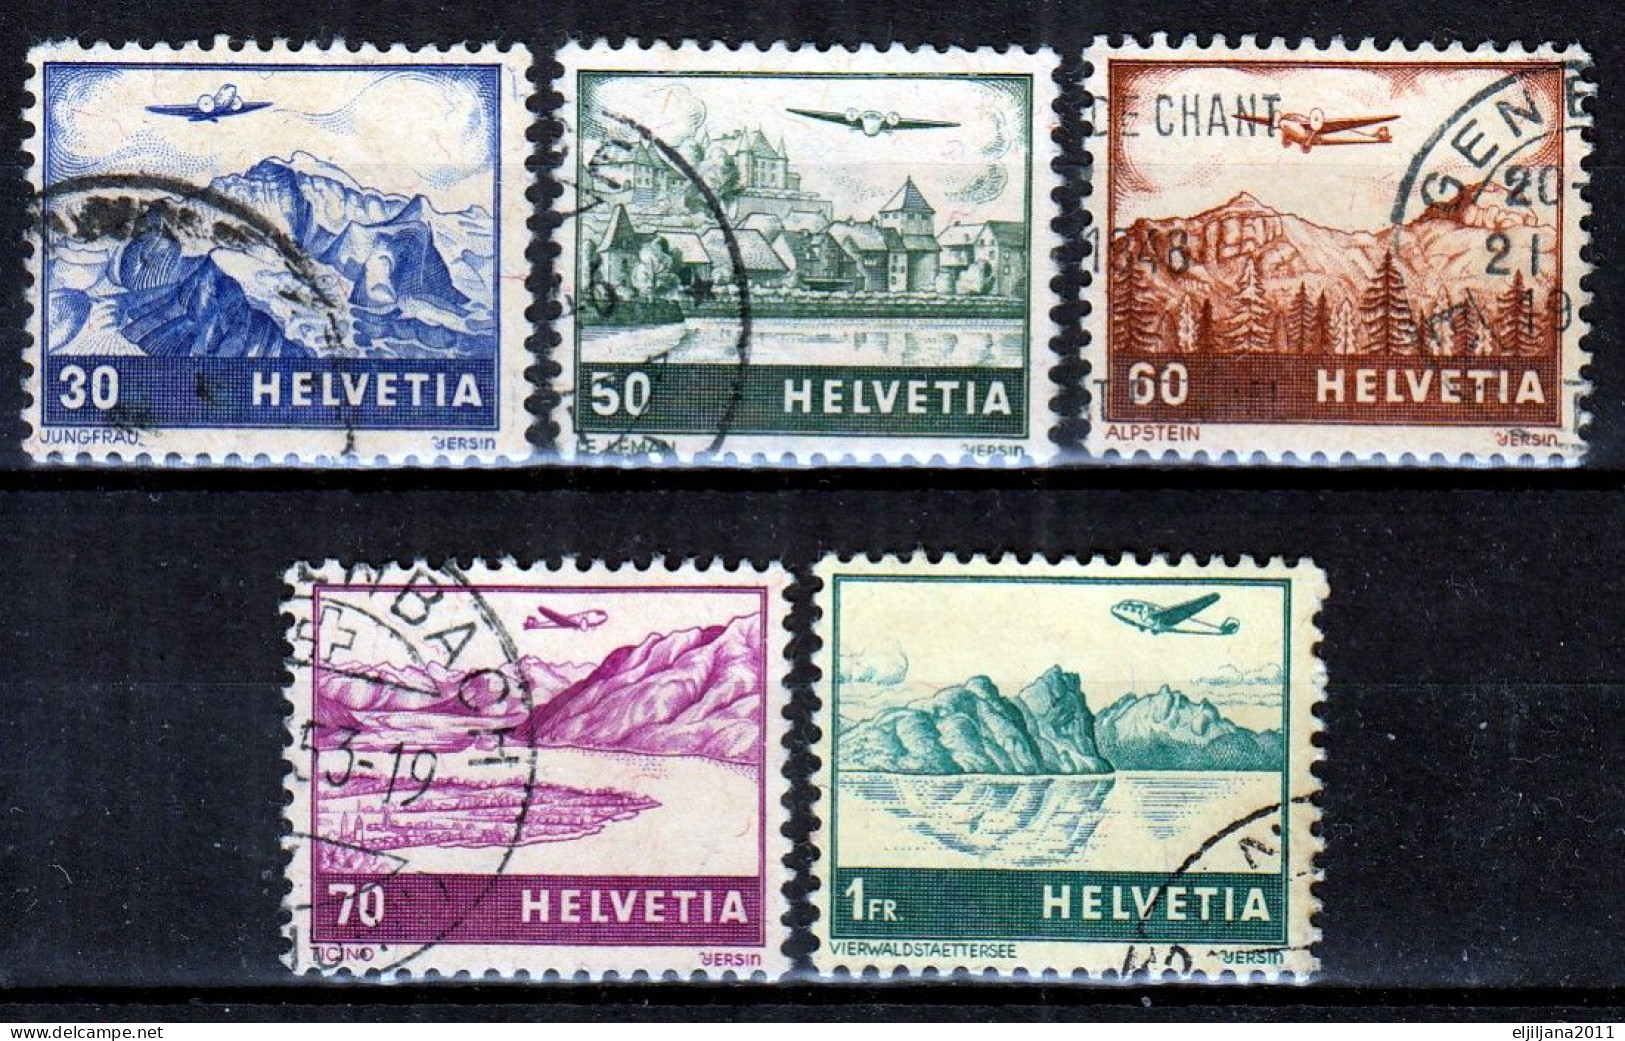 Switzerland / Helvetia / Schweiz / Suisse 1941 ⁕ Airmail / Flugzeug über Landschaften ⁕ 5v Used - Gebraucht